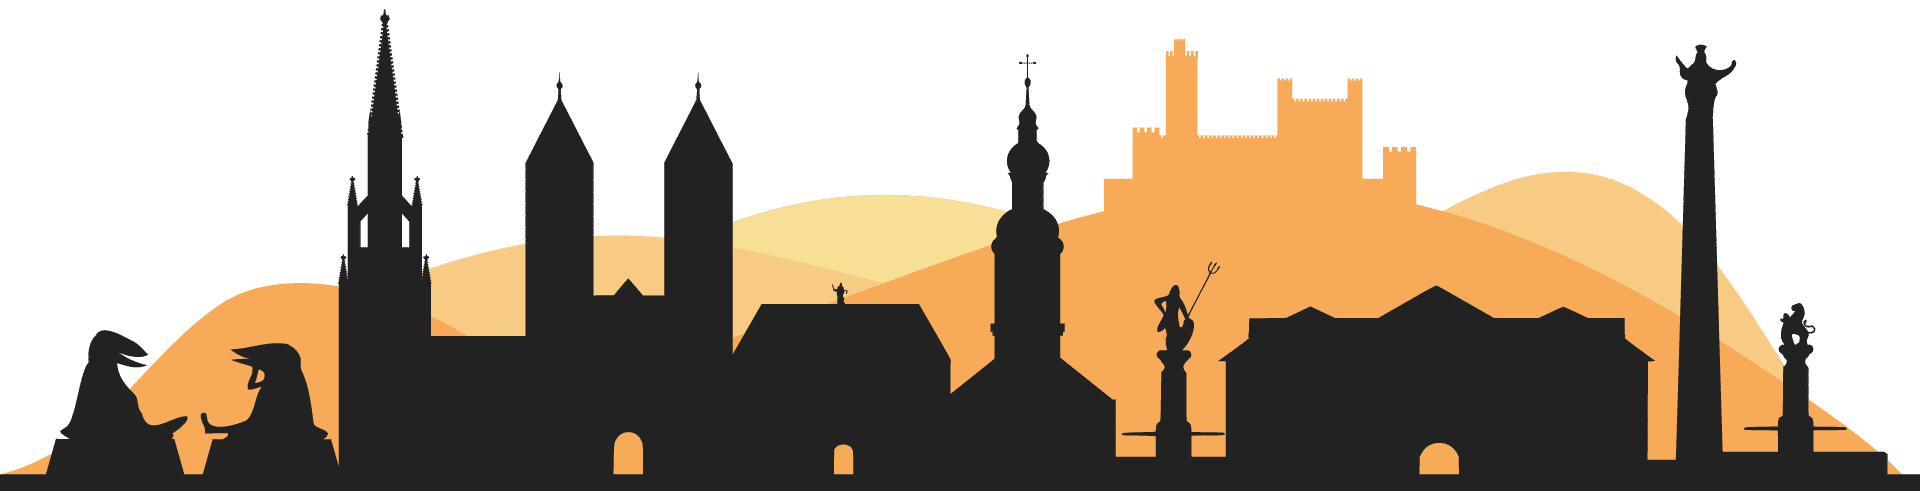 Silhouette der Wahrzeichen von Offenburg